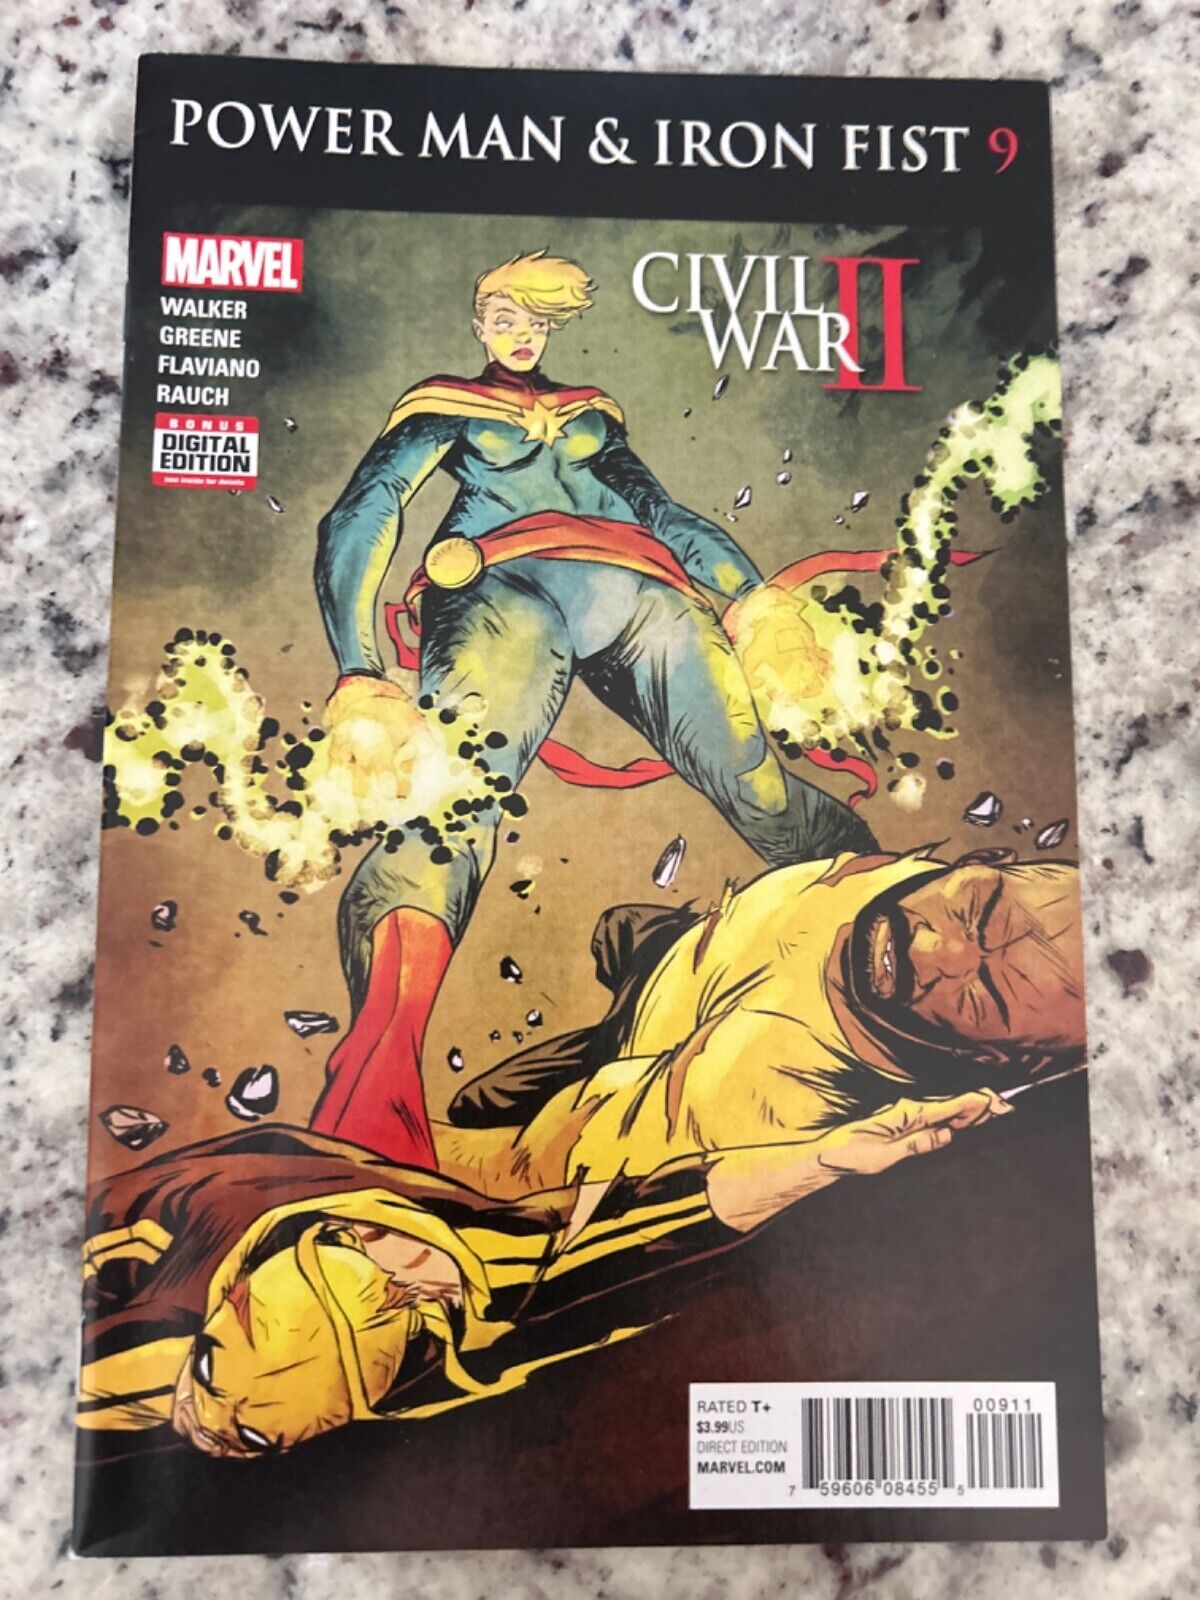 Power Man And Iron Fist #9 Vol. 3 (Marvel, 2016) Civil War II, ungraded